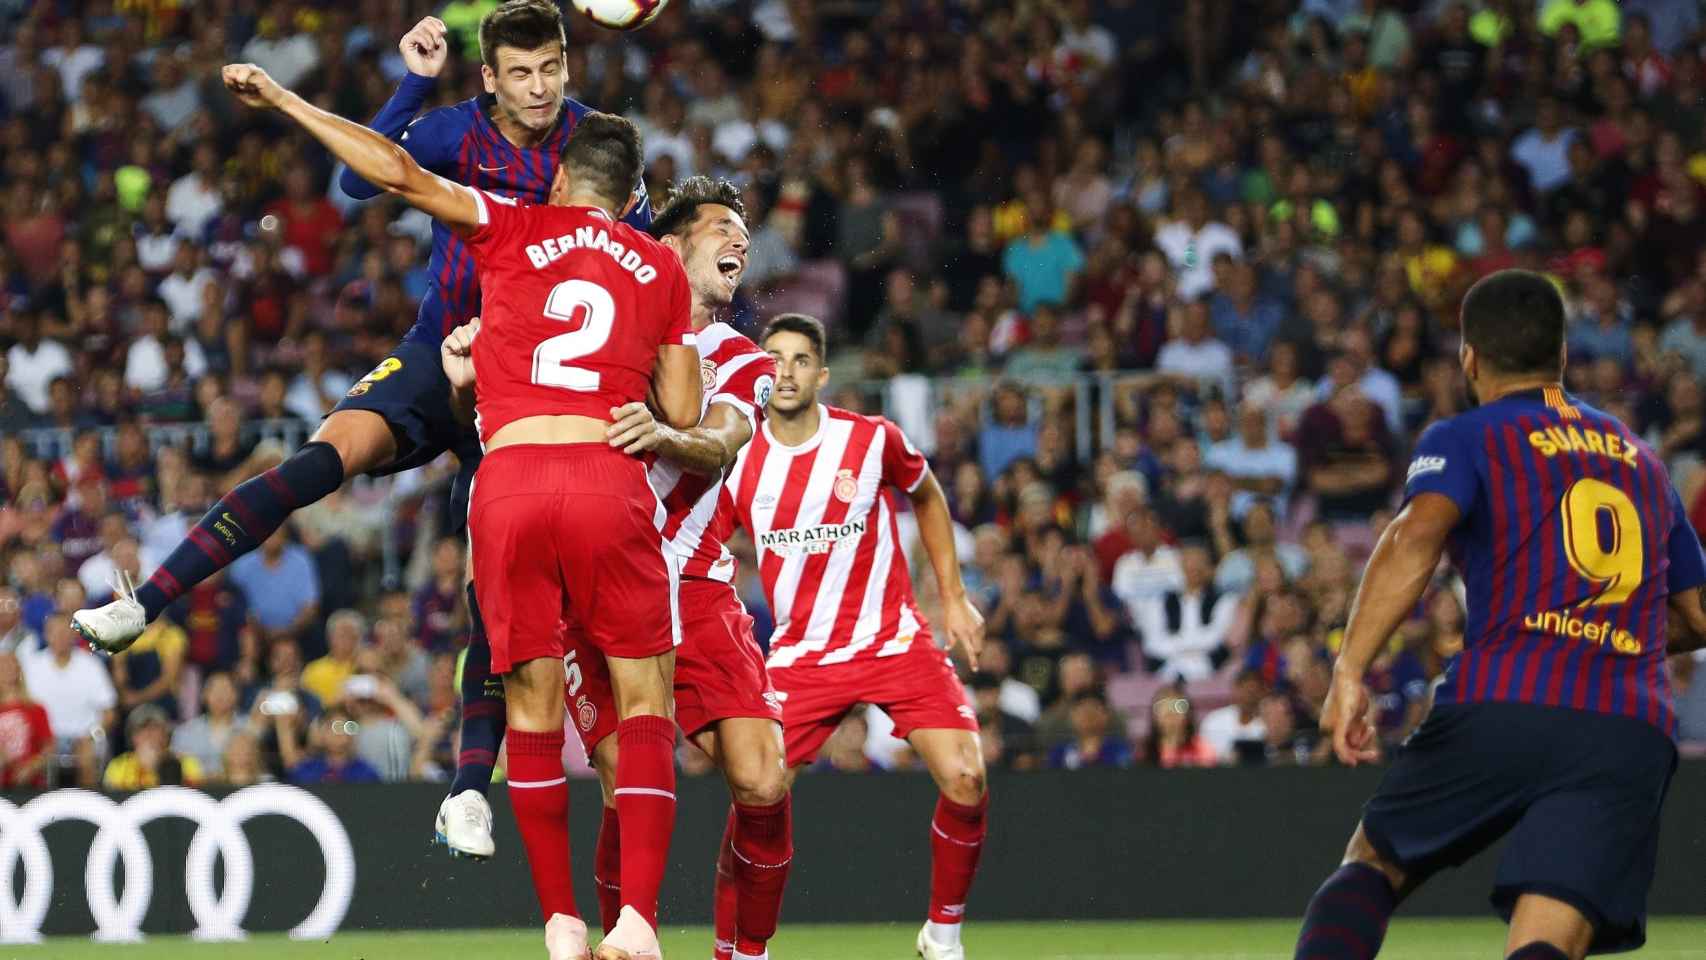 Gerad Piqué en una acción del partido de liga del Barça contra el Girona / EFE